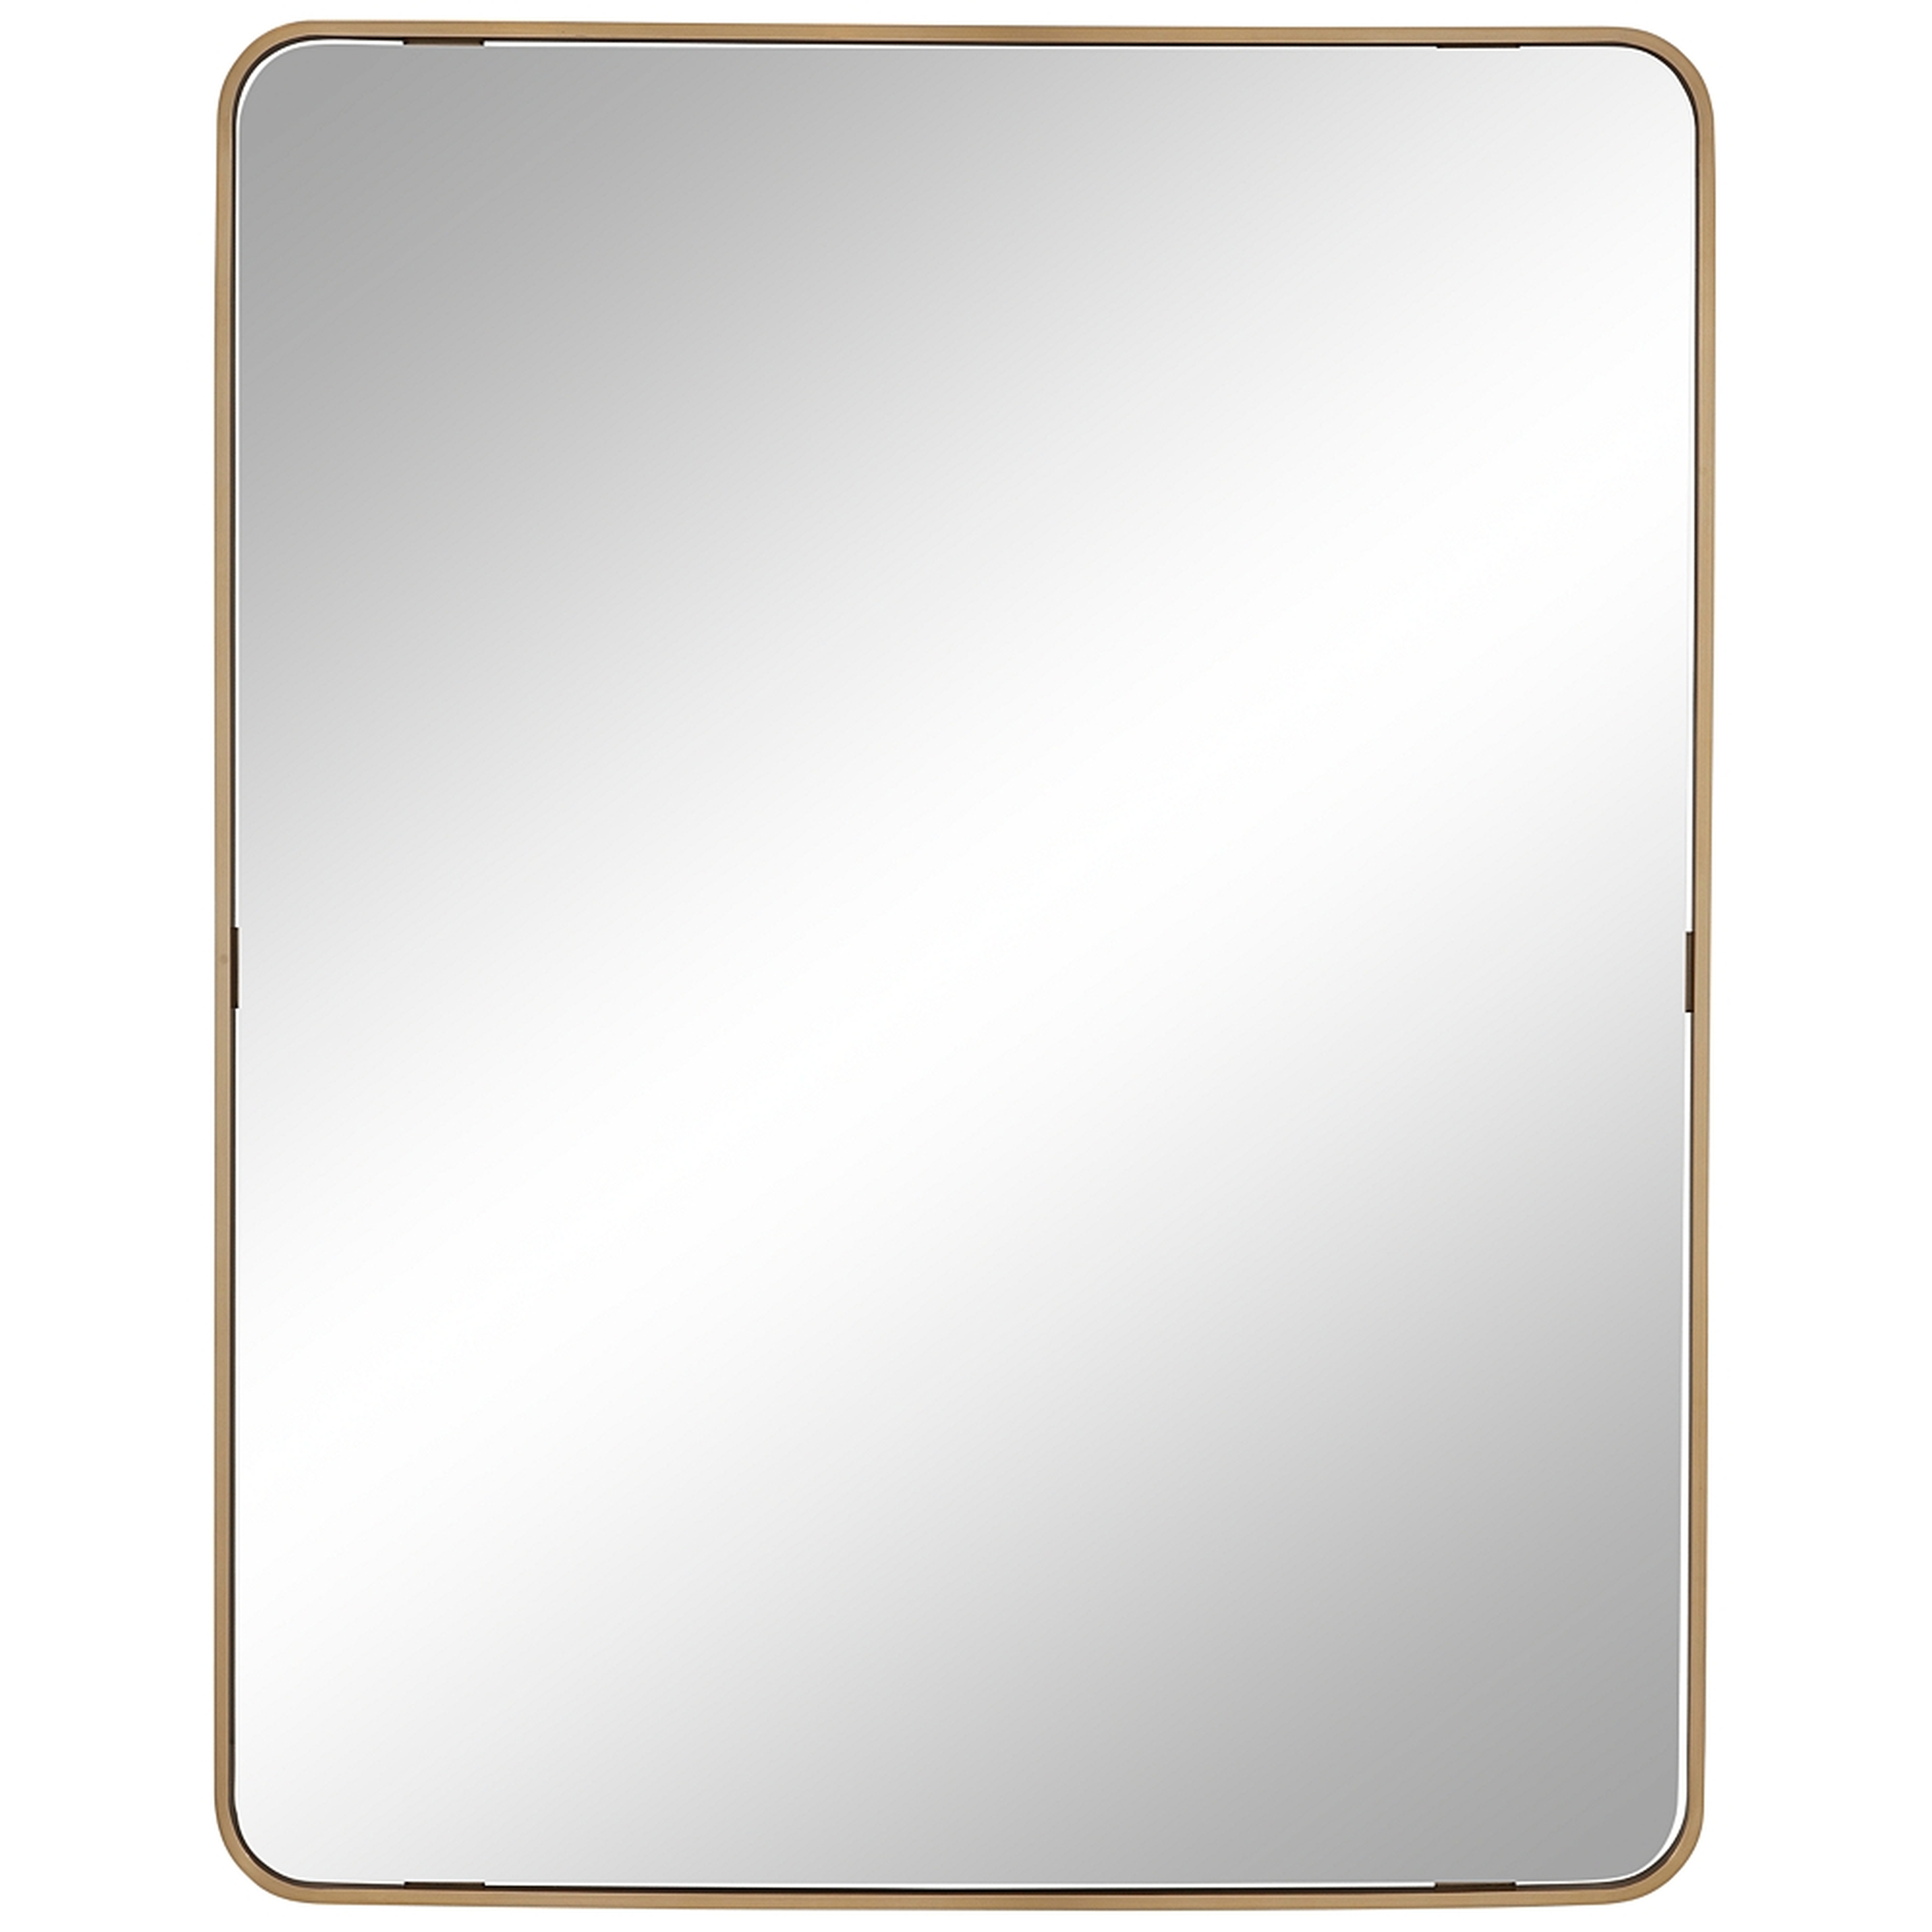 Karnak Brushed Brass Metal 36" x 45" Rectangular Wall Mirror - Style # 417E0 - Lamps Plus